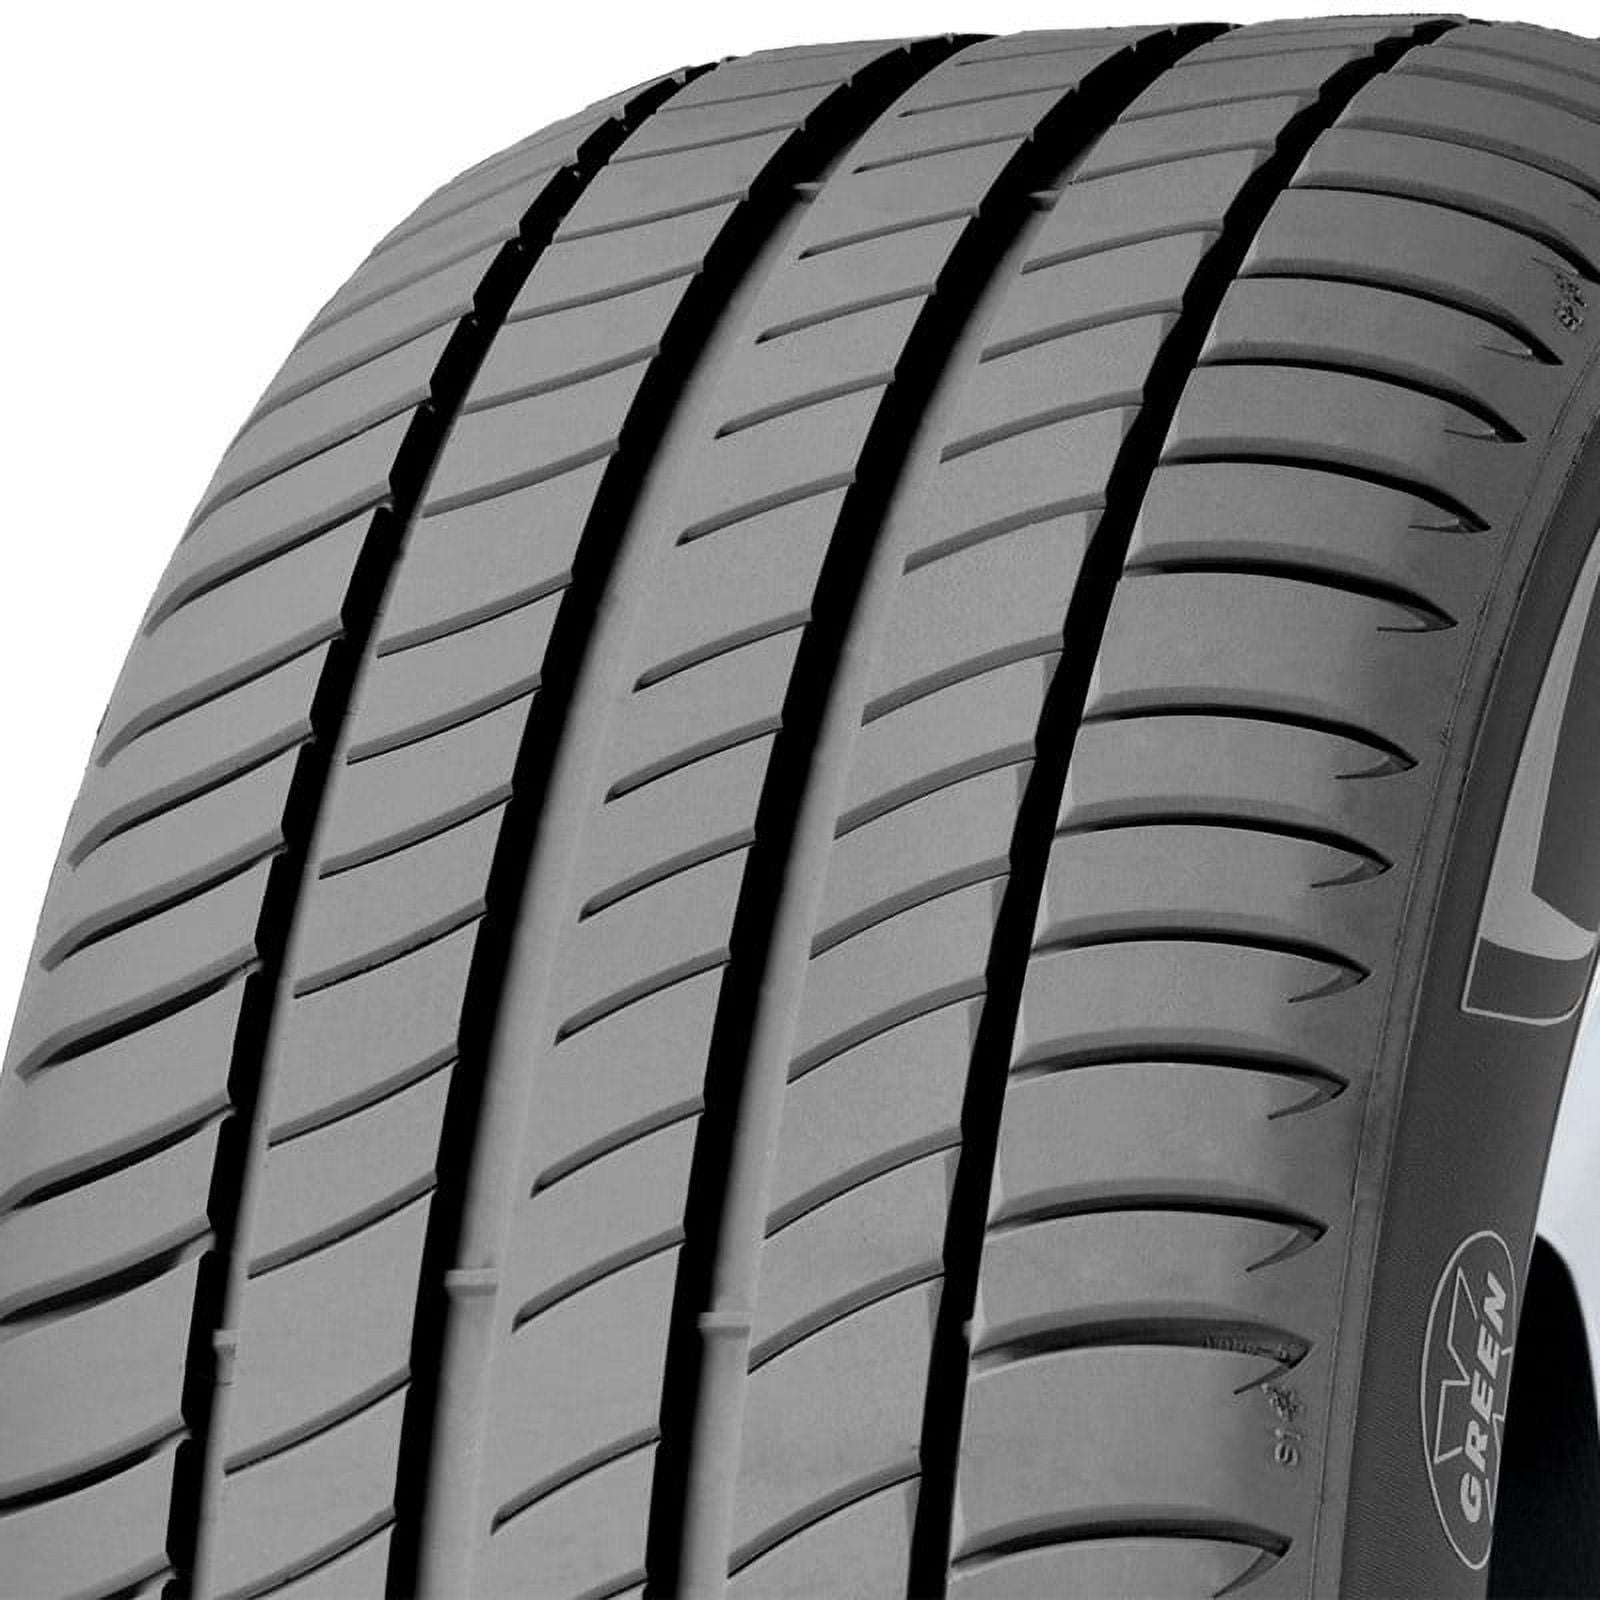 3 225/45R17 Highway 91W Primacy Michelin Tire